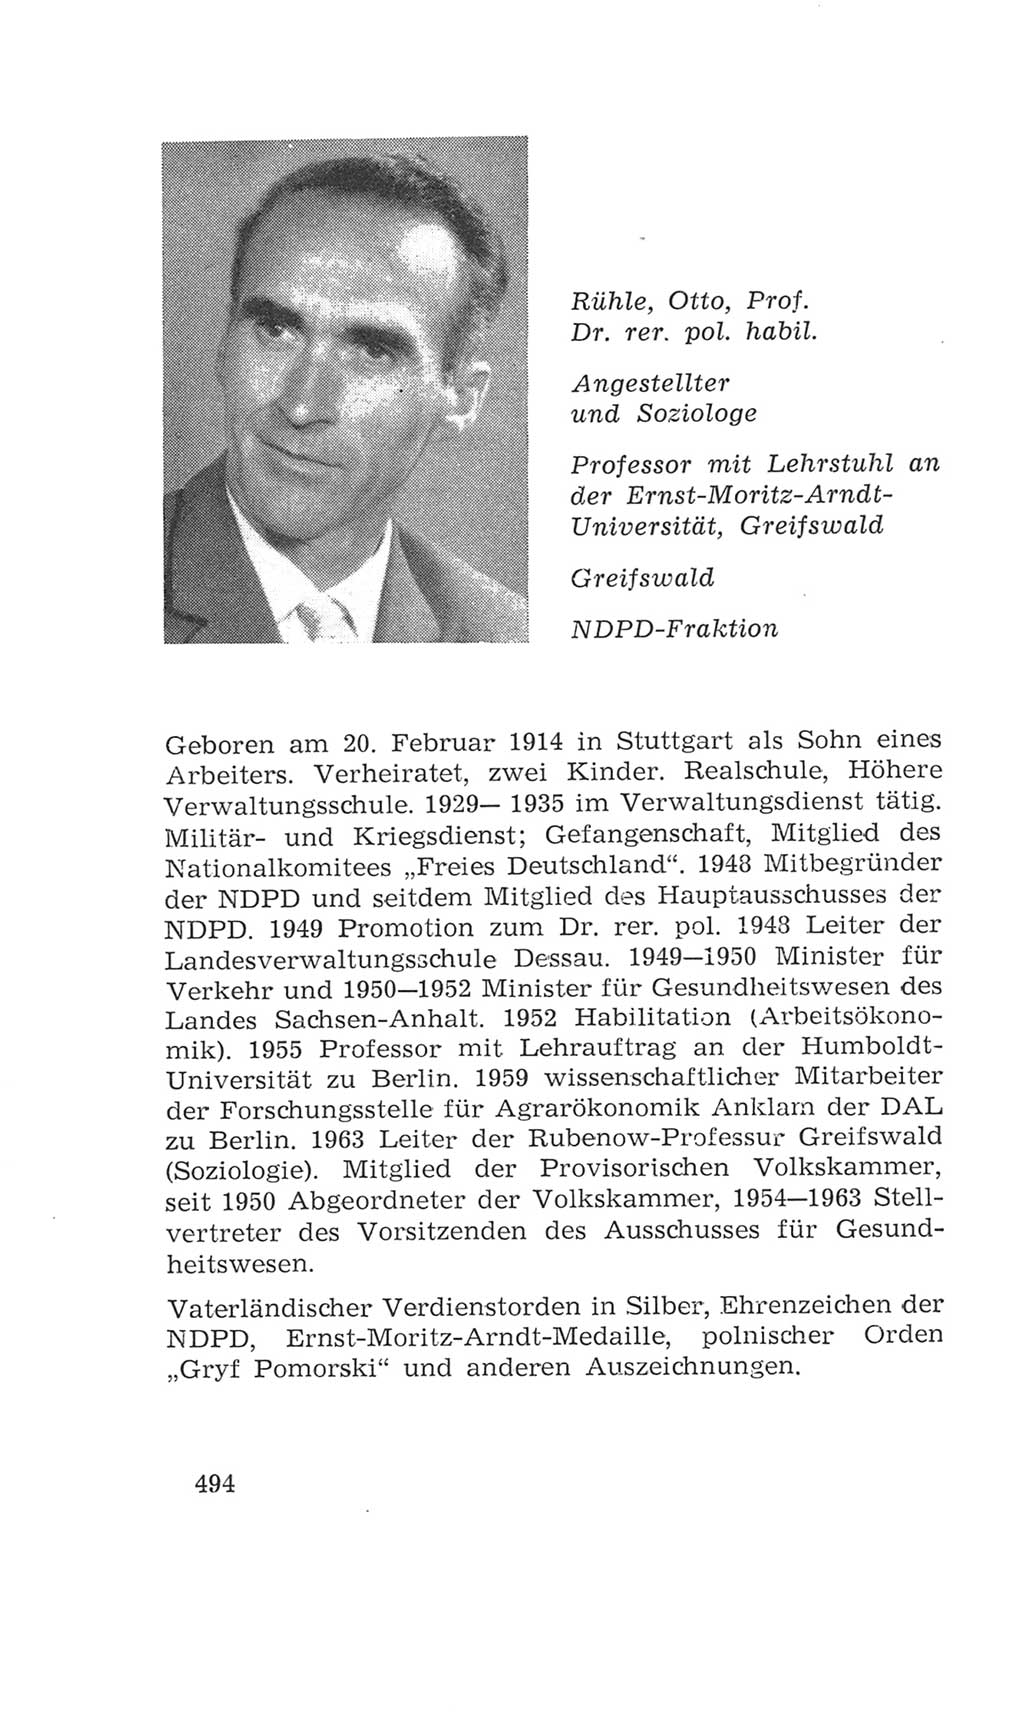 Volkskammer (VK) der Deutschen Demokratischen Republik (DDR), 4. Wahlperiode 1963-1967, Seite 494 (VK. DDR 4. WP. 1963-1967, S. 494)